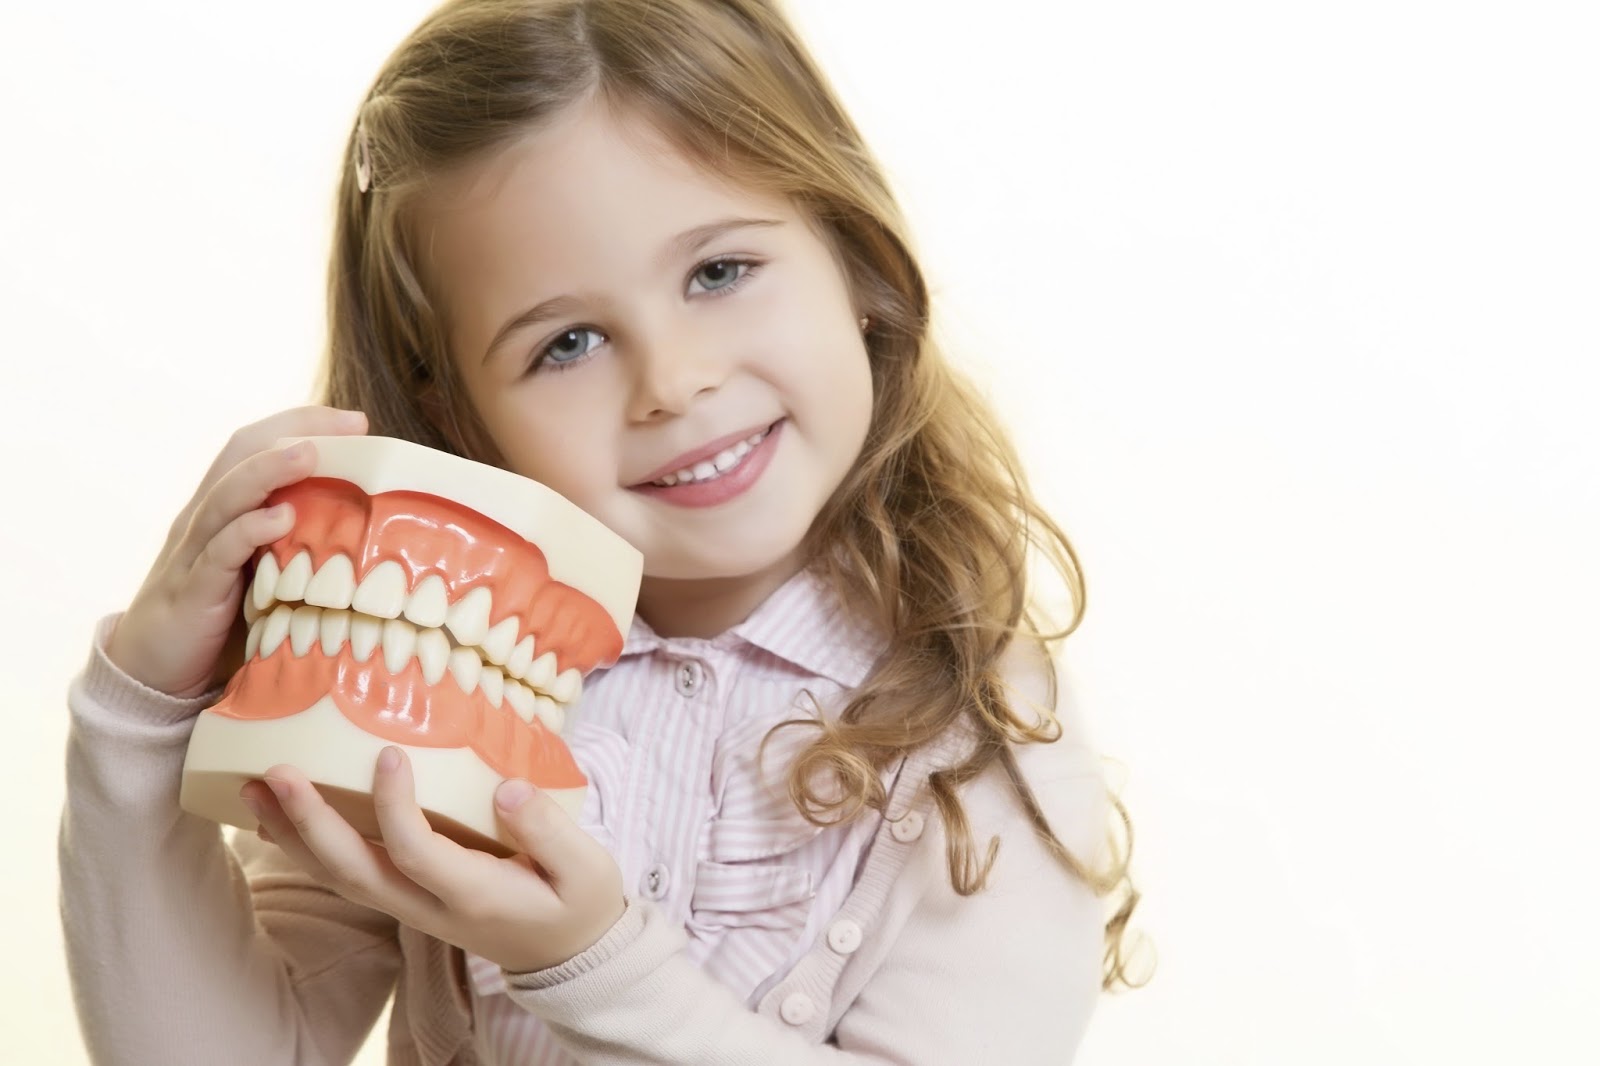 Odontologia humanizada: uma forma sensível de acolher e confortar